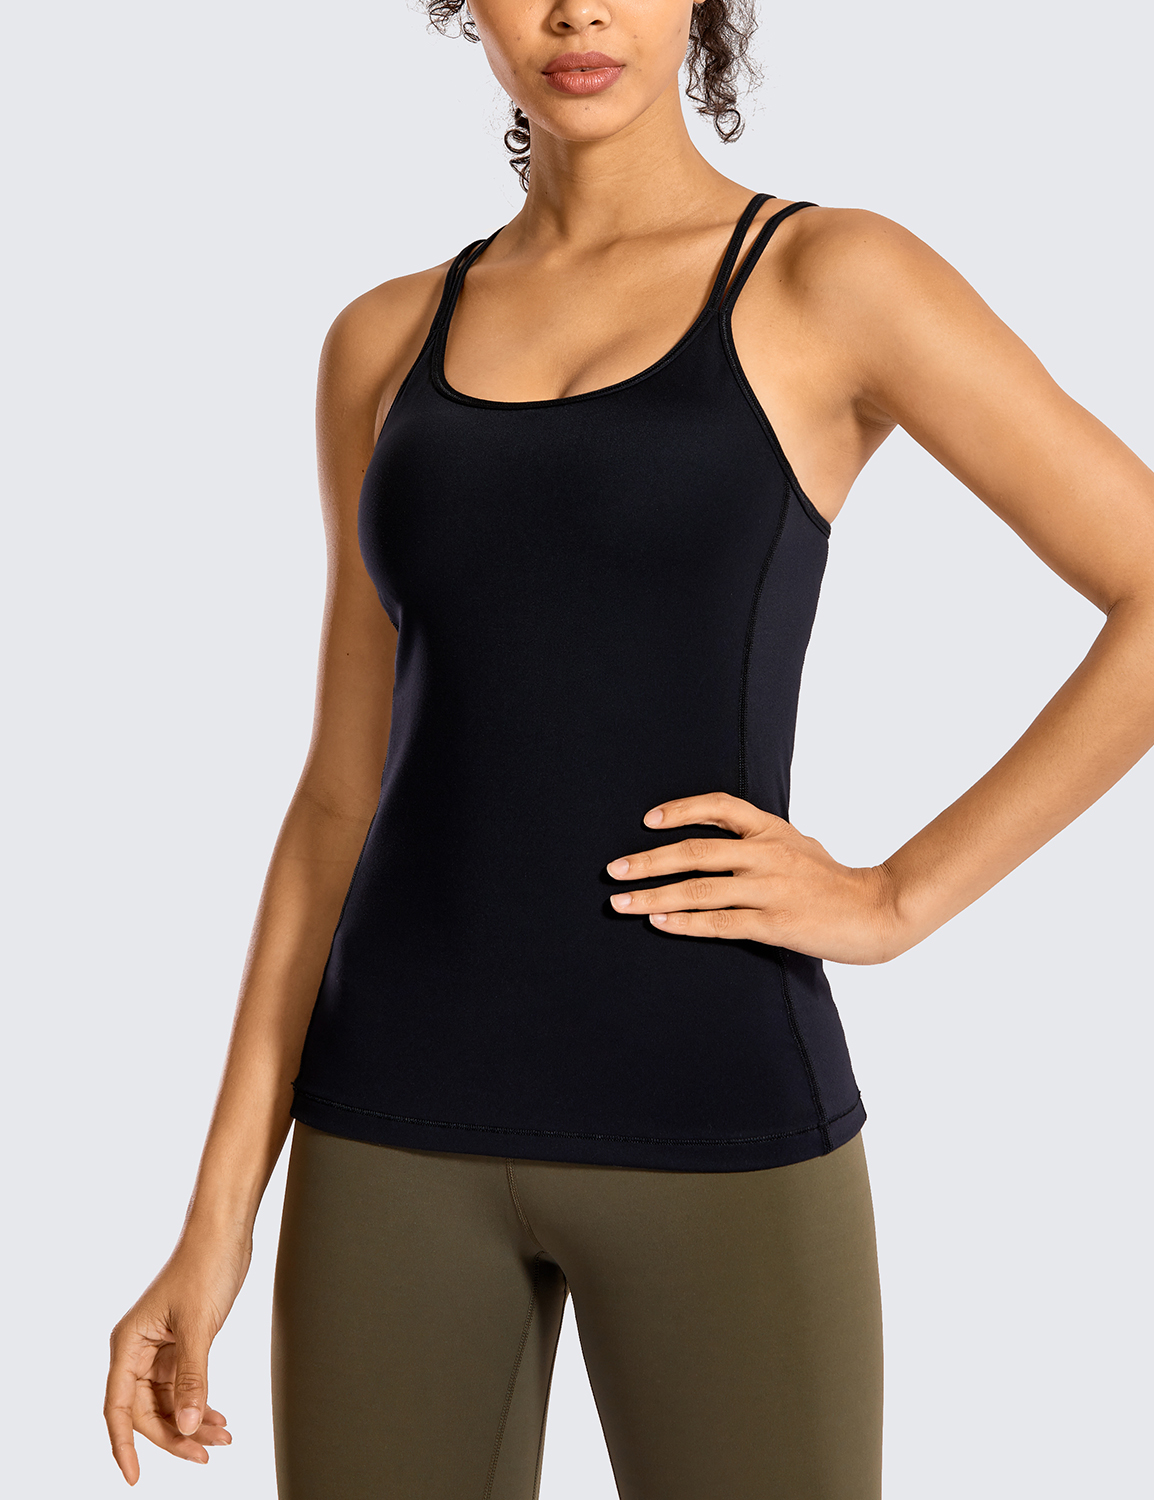 SAYOO Women Running Seamless Shirts Yoga Bra Cami Top with Built